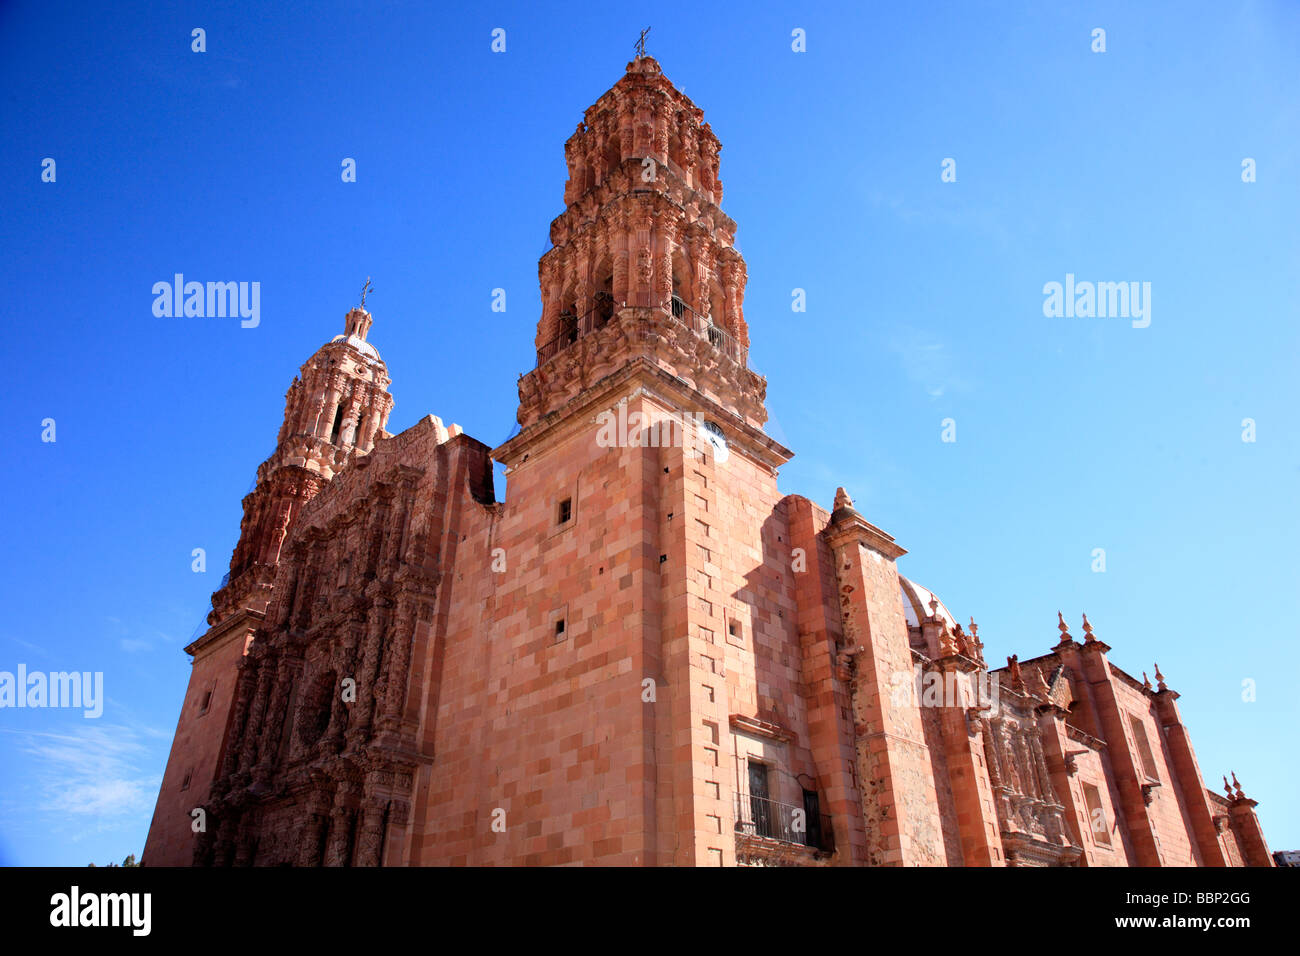 Kathedrale Zacatecas Mexiko Kolonialstadt Barockstil Steinfassade rötliche Farben im Gegensatz dazu blaue Himmel Sonnentag Türme bauen Stockfoto